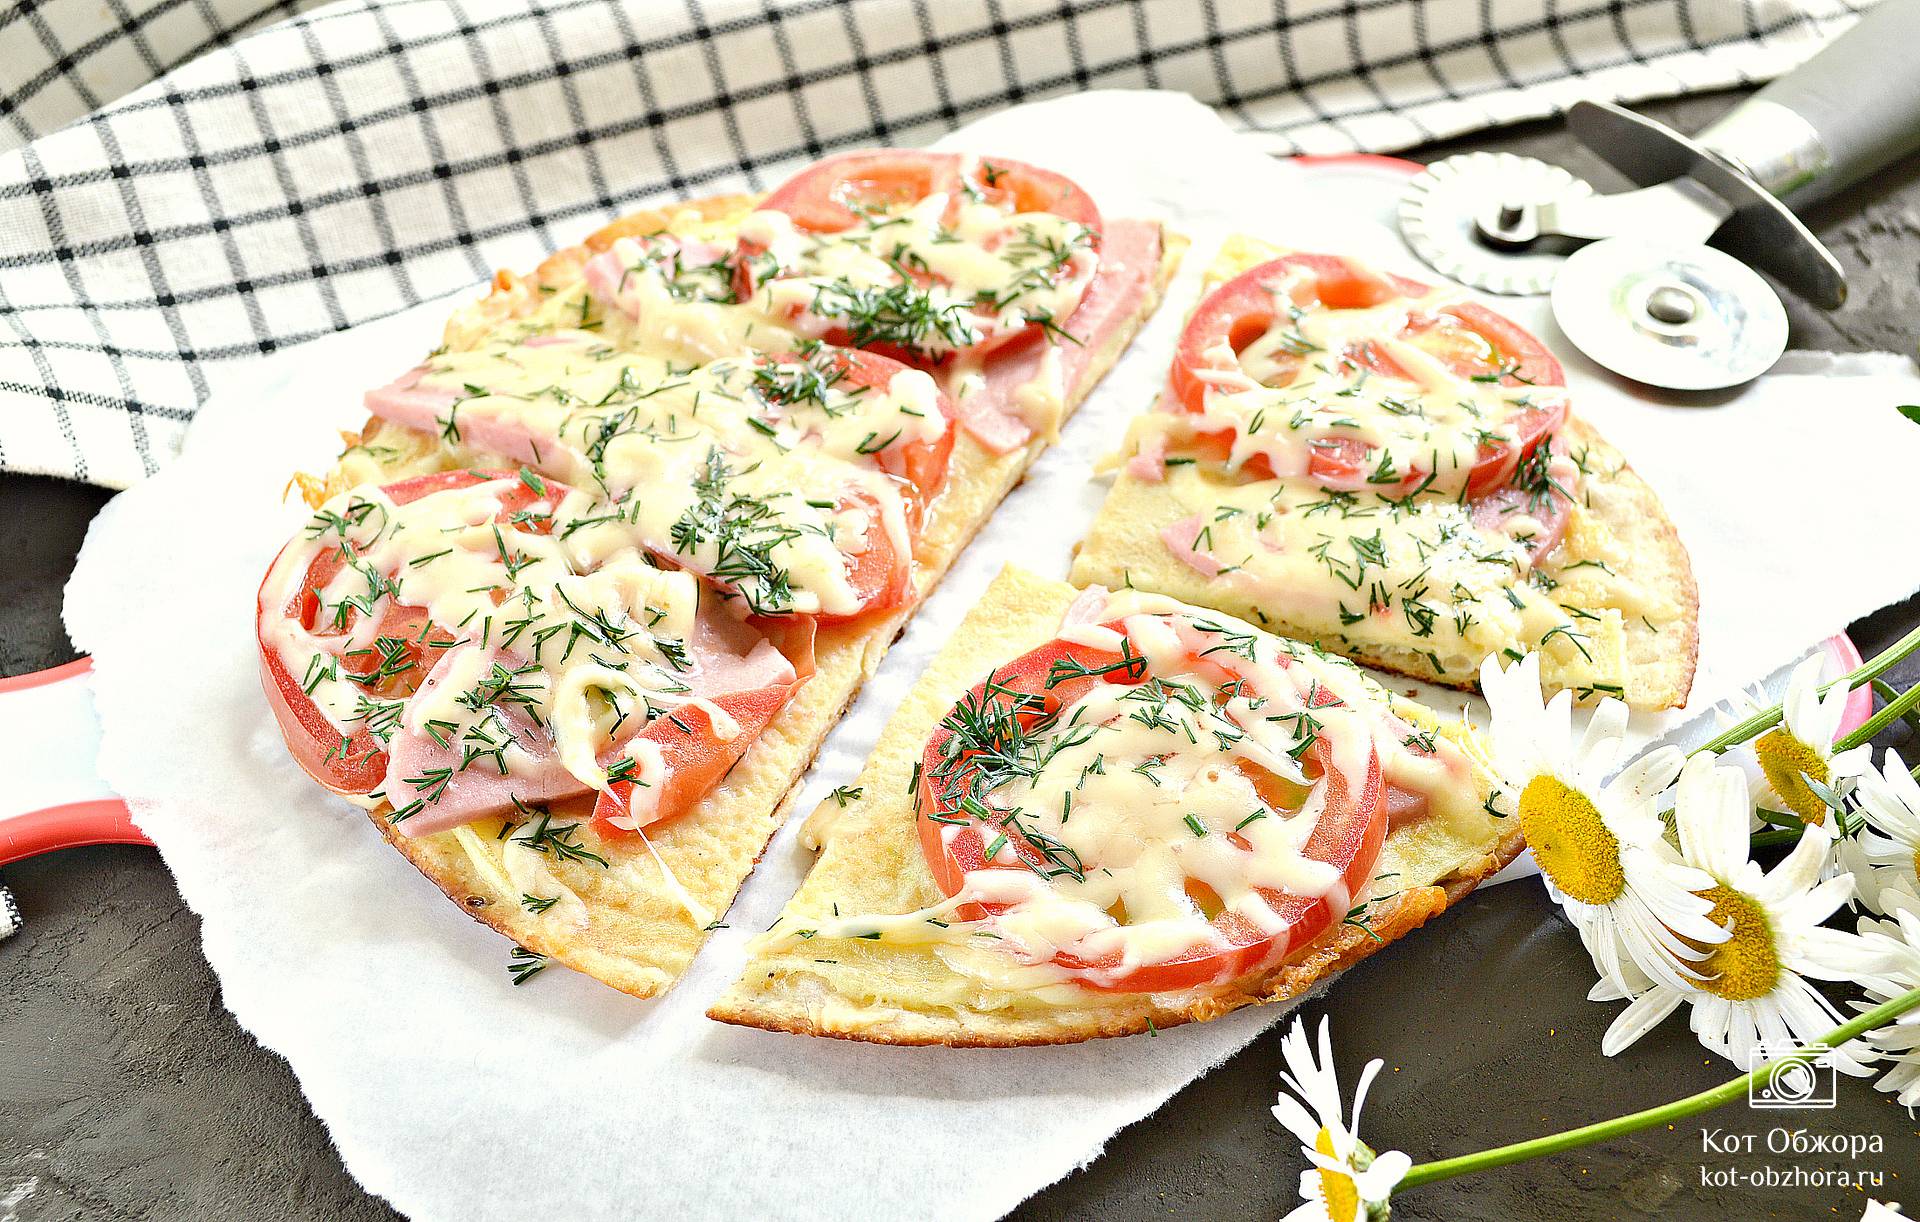 ПИЦЦА на сковороде ЗА 10 МИНУТ с колбасой, сыром и помидорами. Как сделать пиццу на кефире быстро?